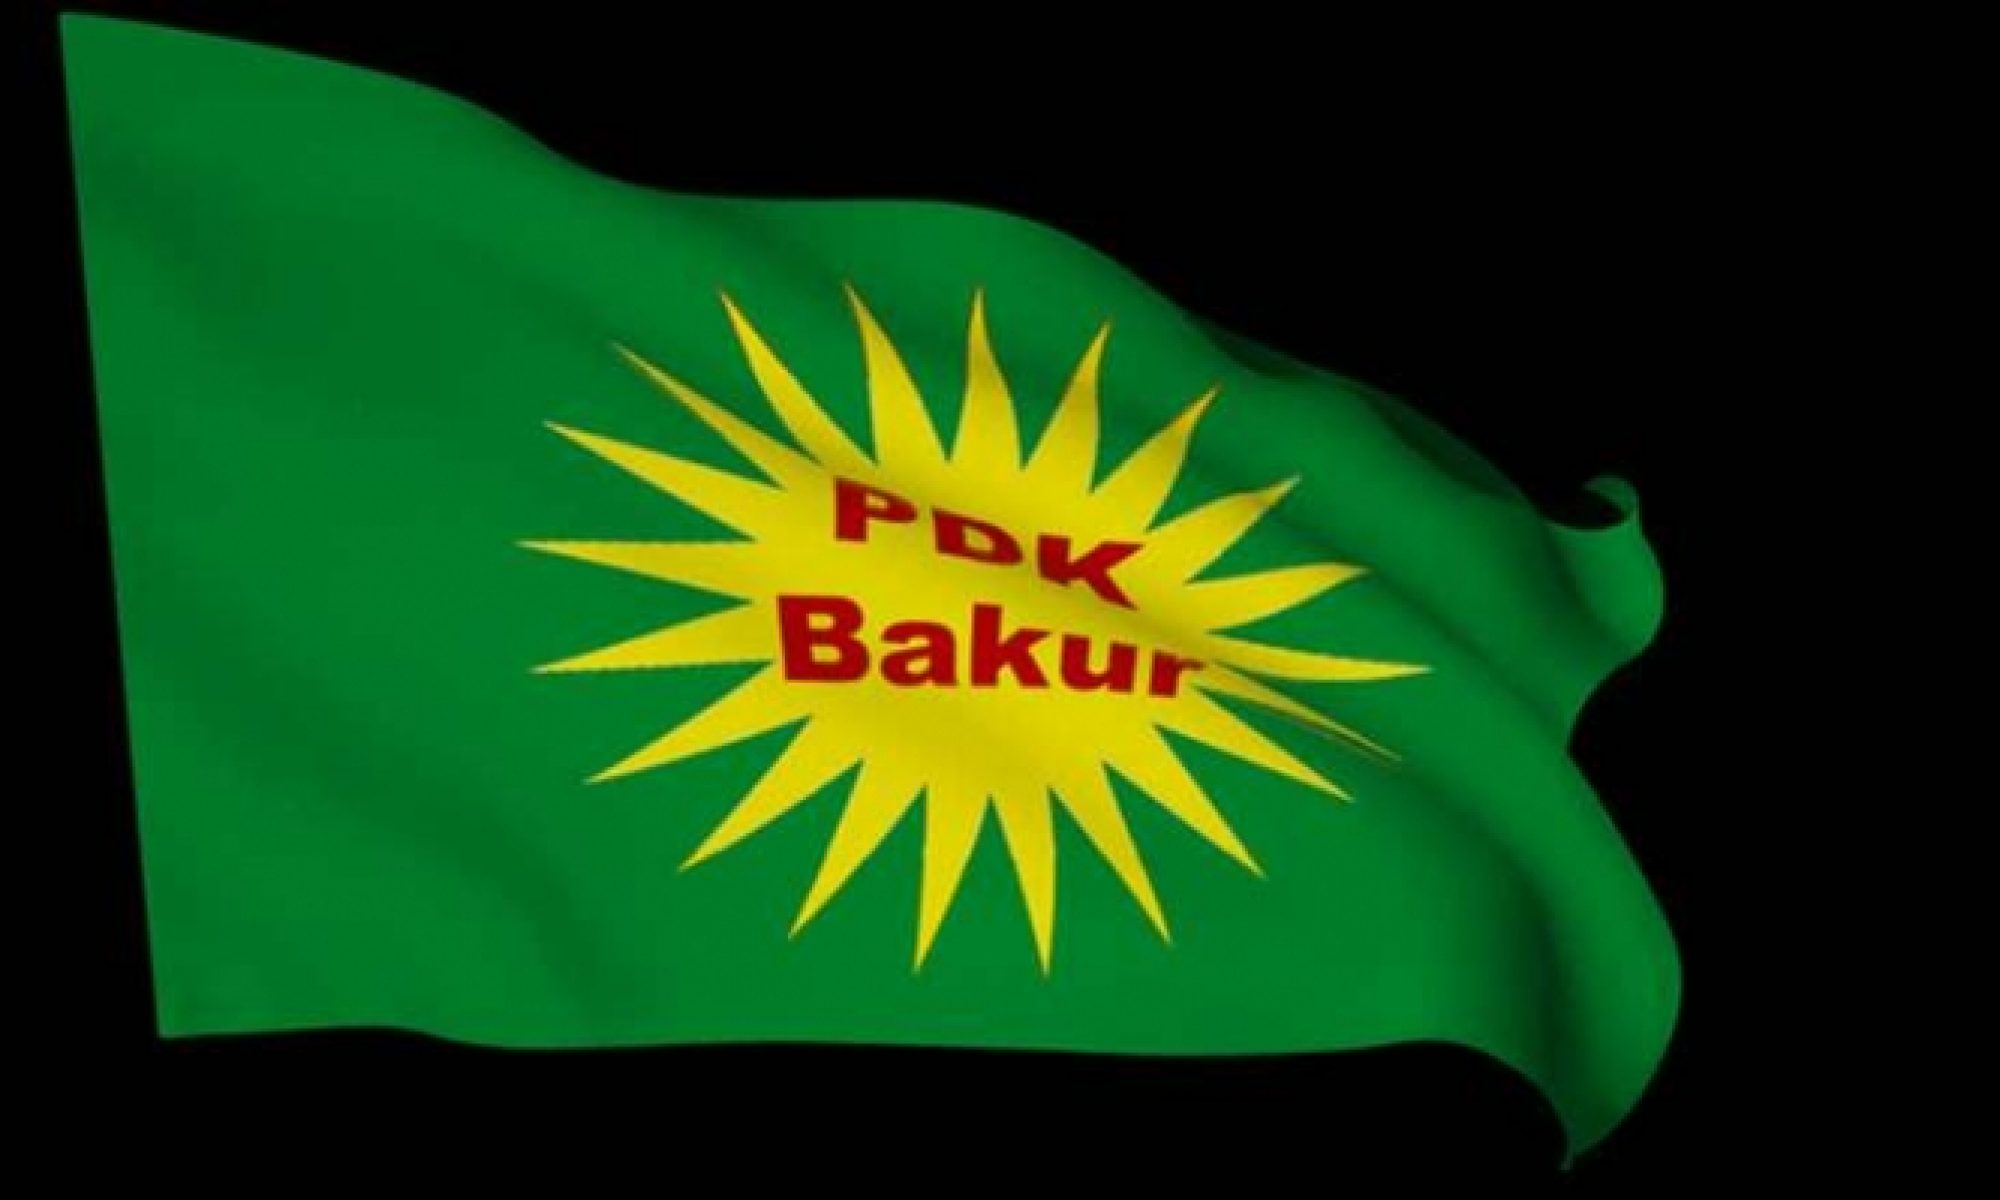 PDK-Bakur'dan parti ve kurumlara teşekkür mesajı Hamit Kiliçaslan, Barzani,